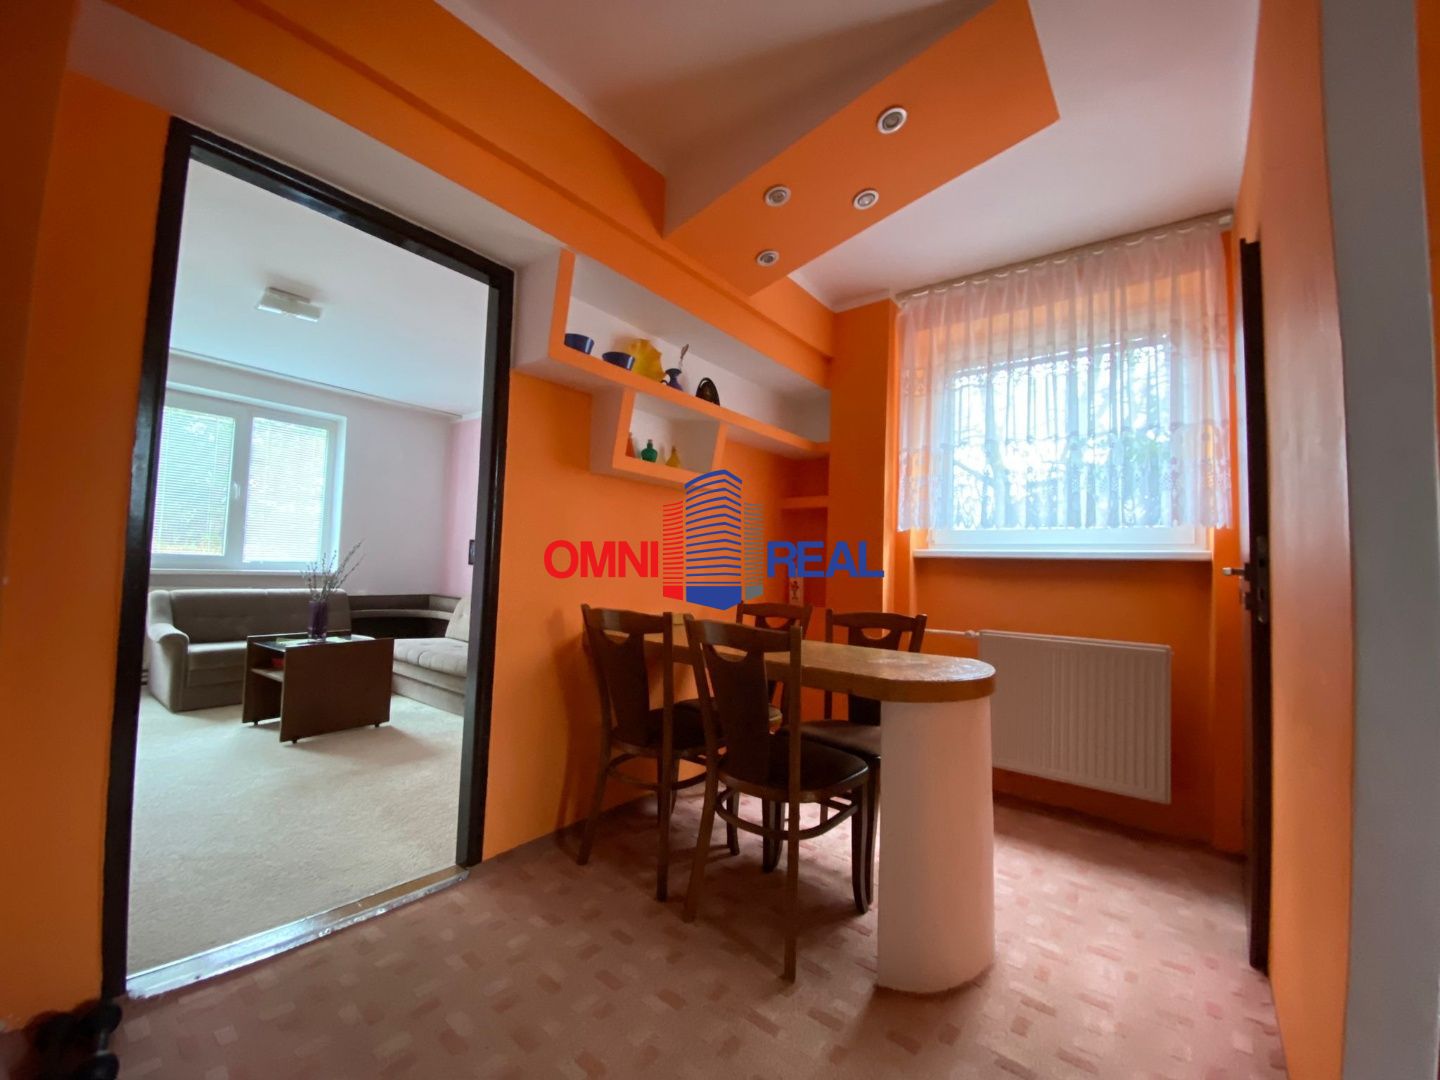 4 izb. byt, ul. Lesná - 120 m2 - možnosť rozdelenia na 2 bytové jednotky